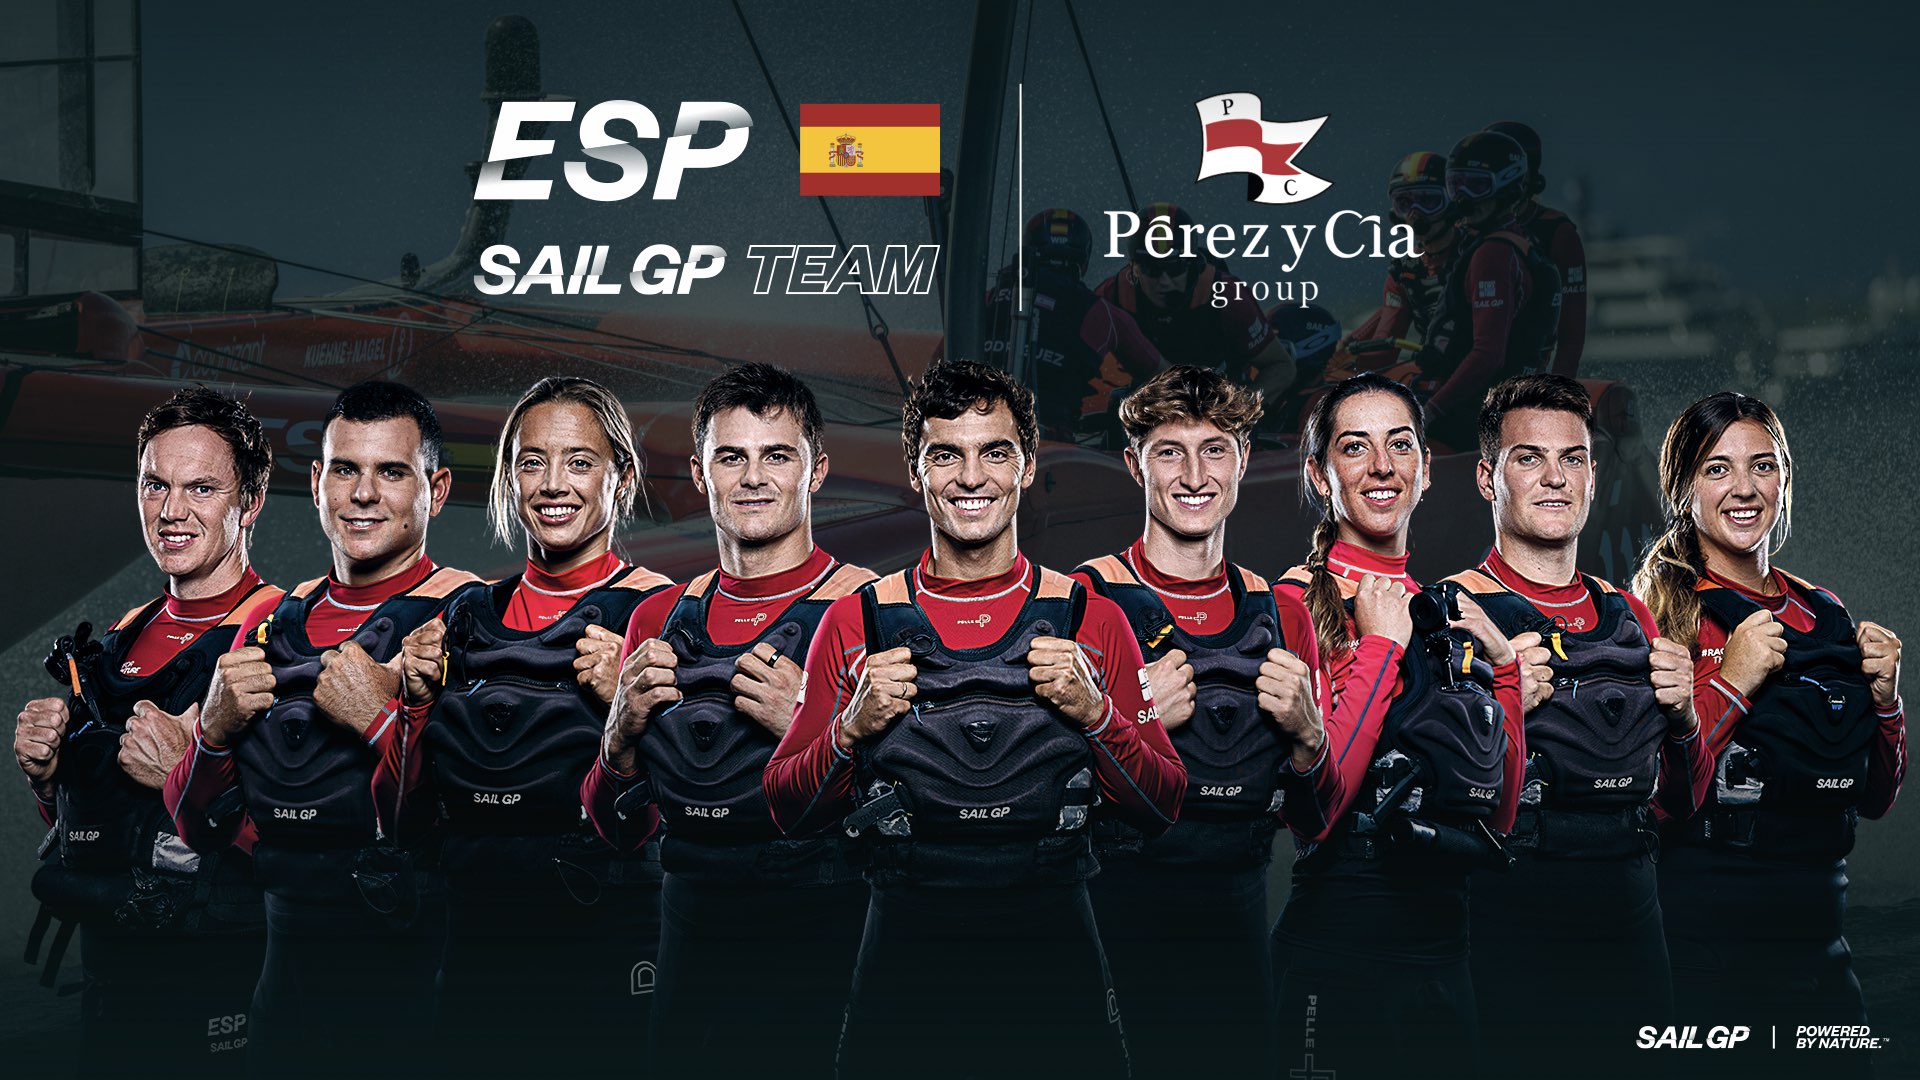 Spain SailGP Team | Perez y Cia | Announcement Asset